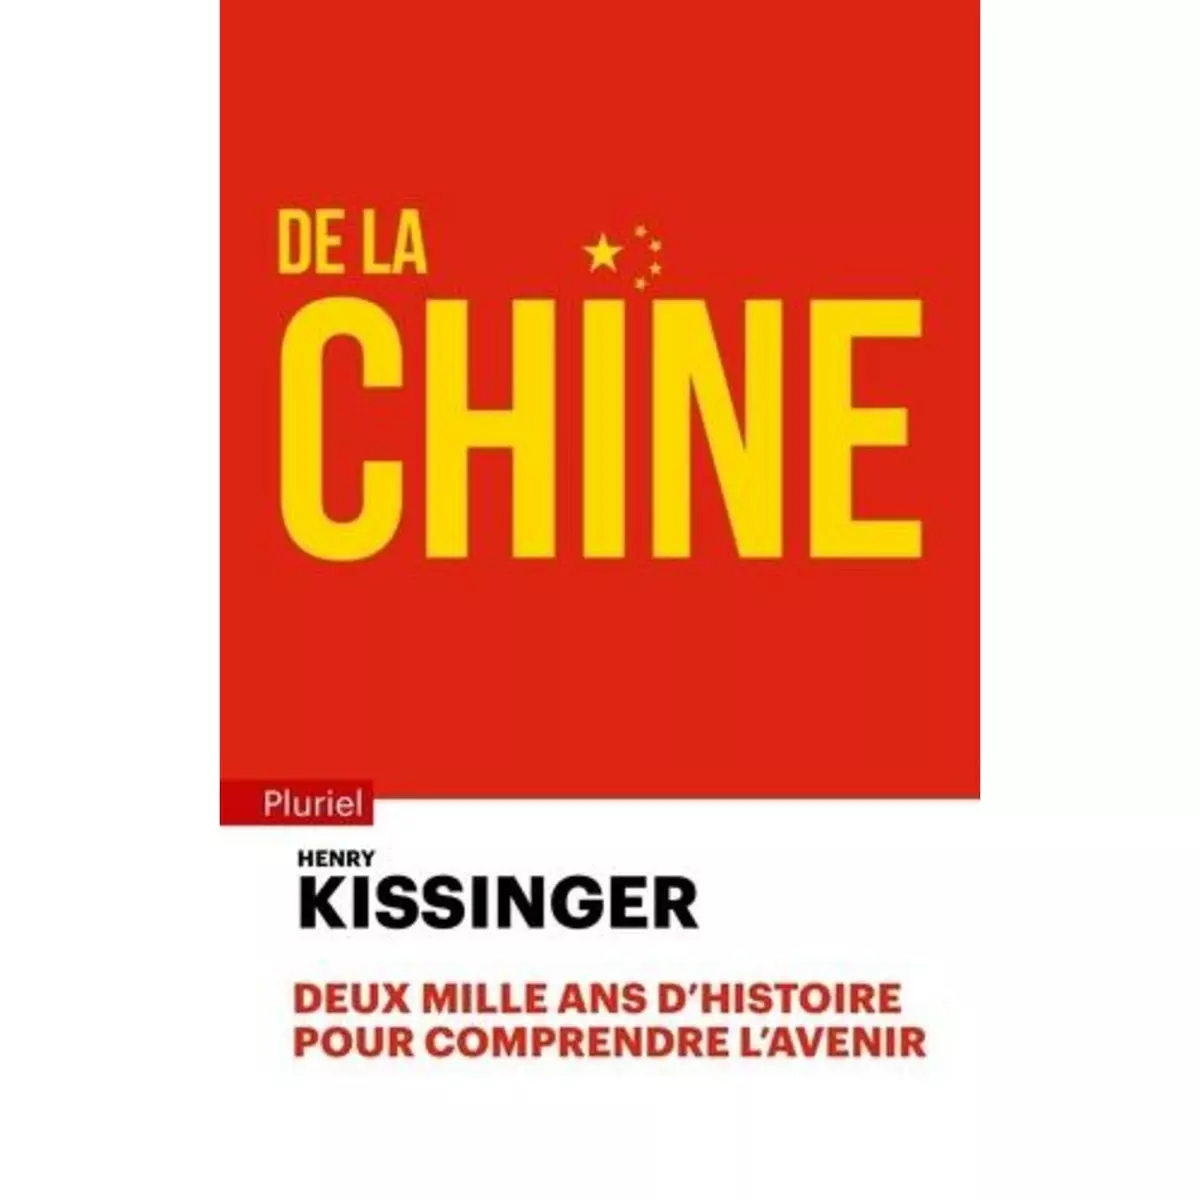  DE LA CHINE, Kissinger Henry